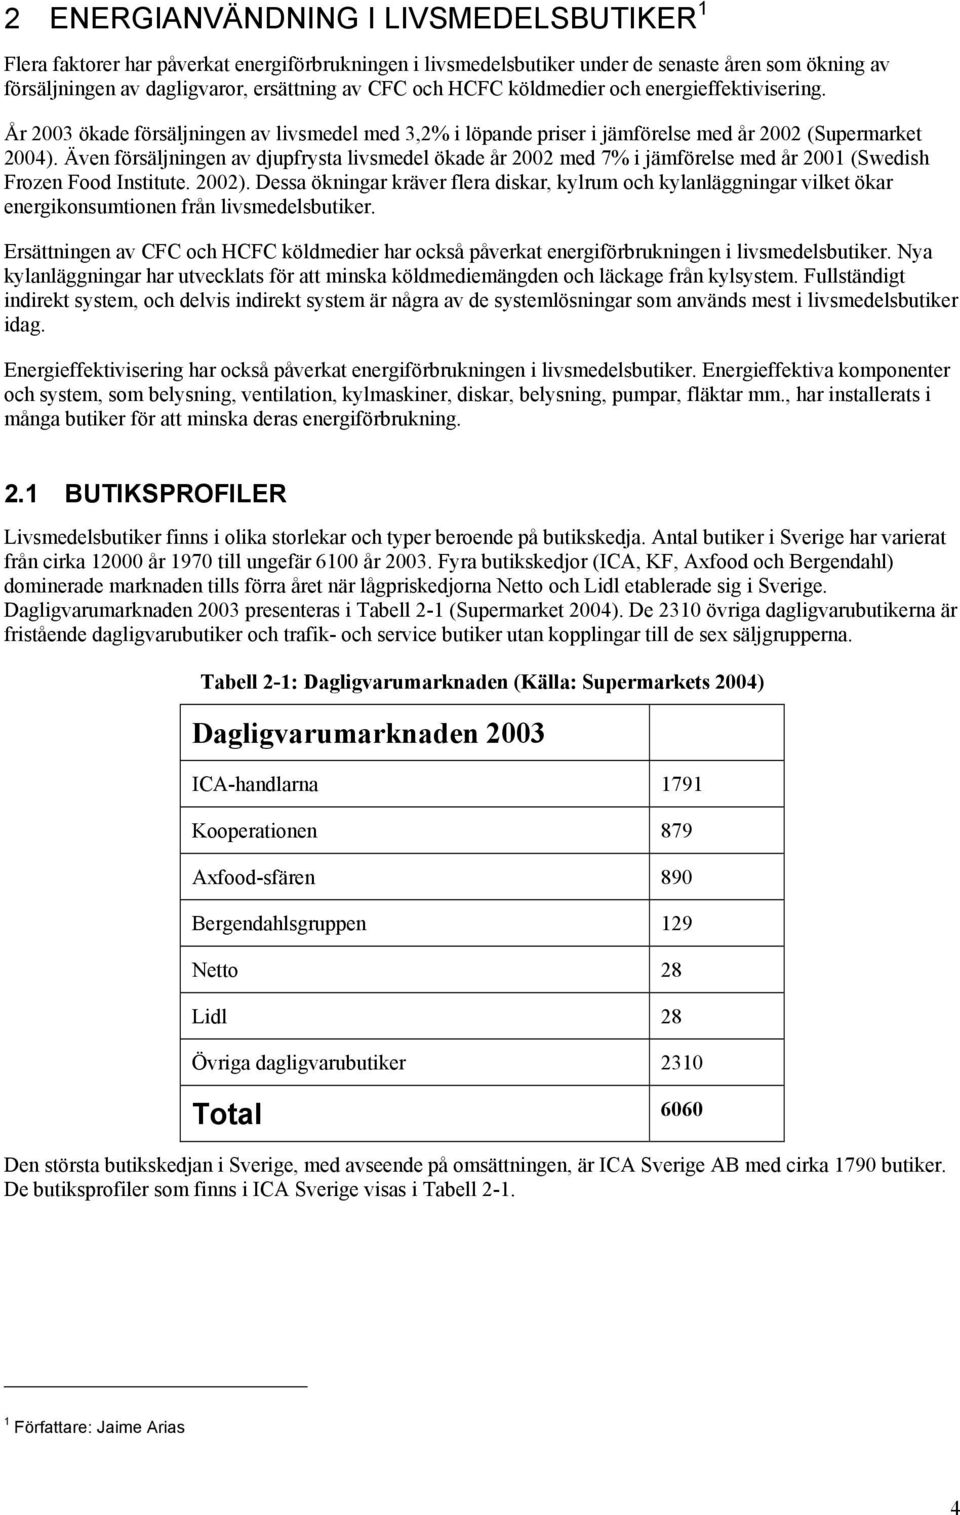 Även försäljningen av djupfrysta livsmedel ökade år 2002 med 7% i jämförelse med år 2001 (Swedish Frozen Food Institute. 2002).